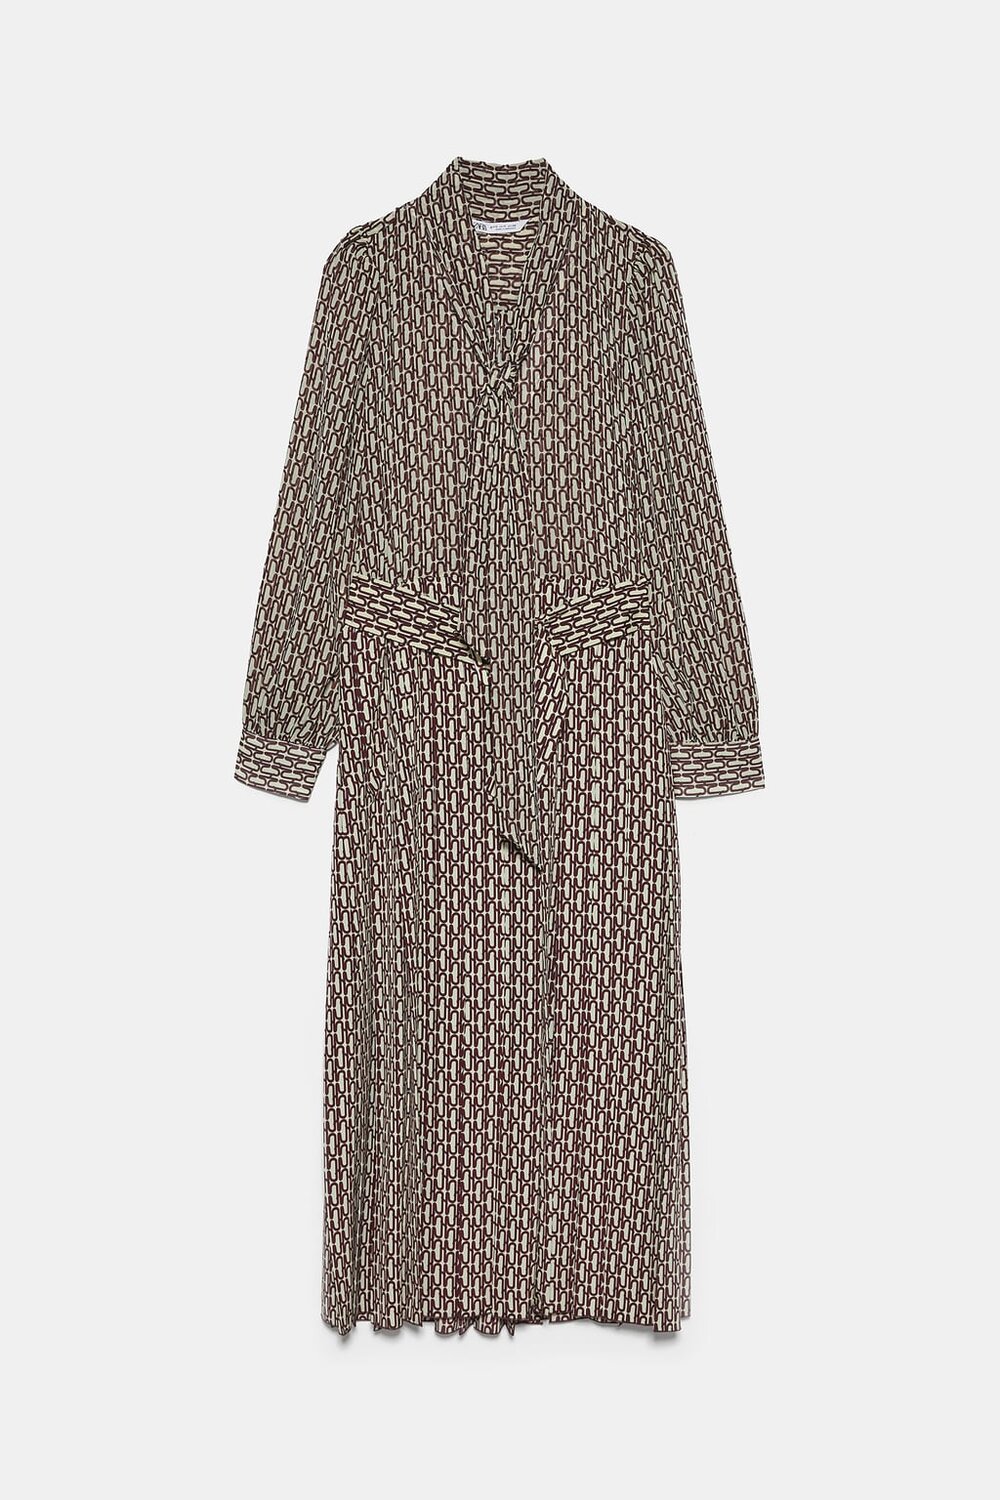 Zara Pleated Printed Dress in Ecru — UFO No More